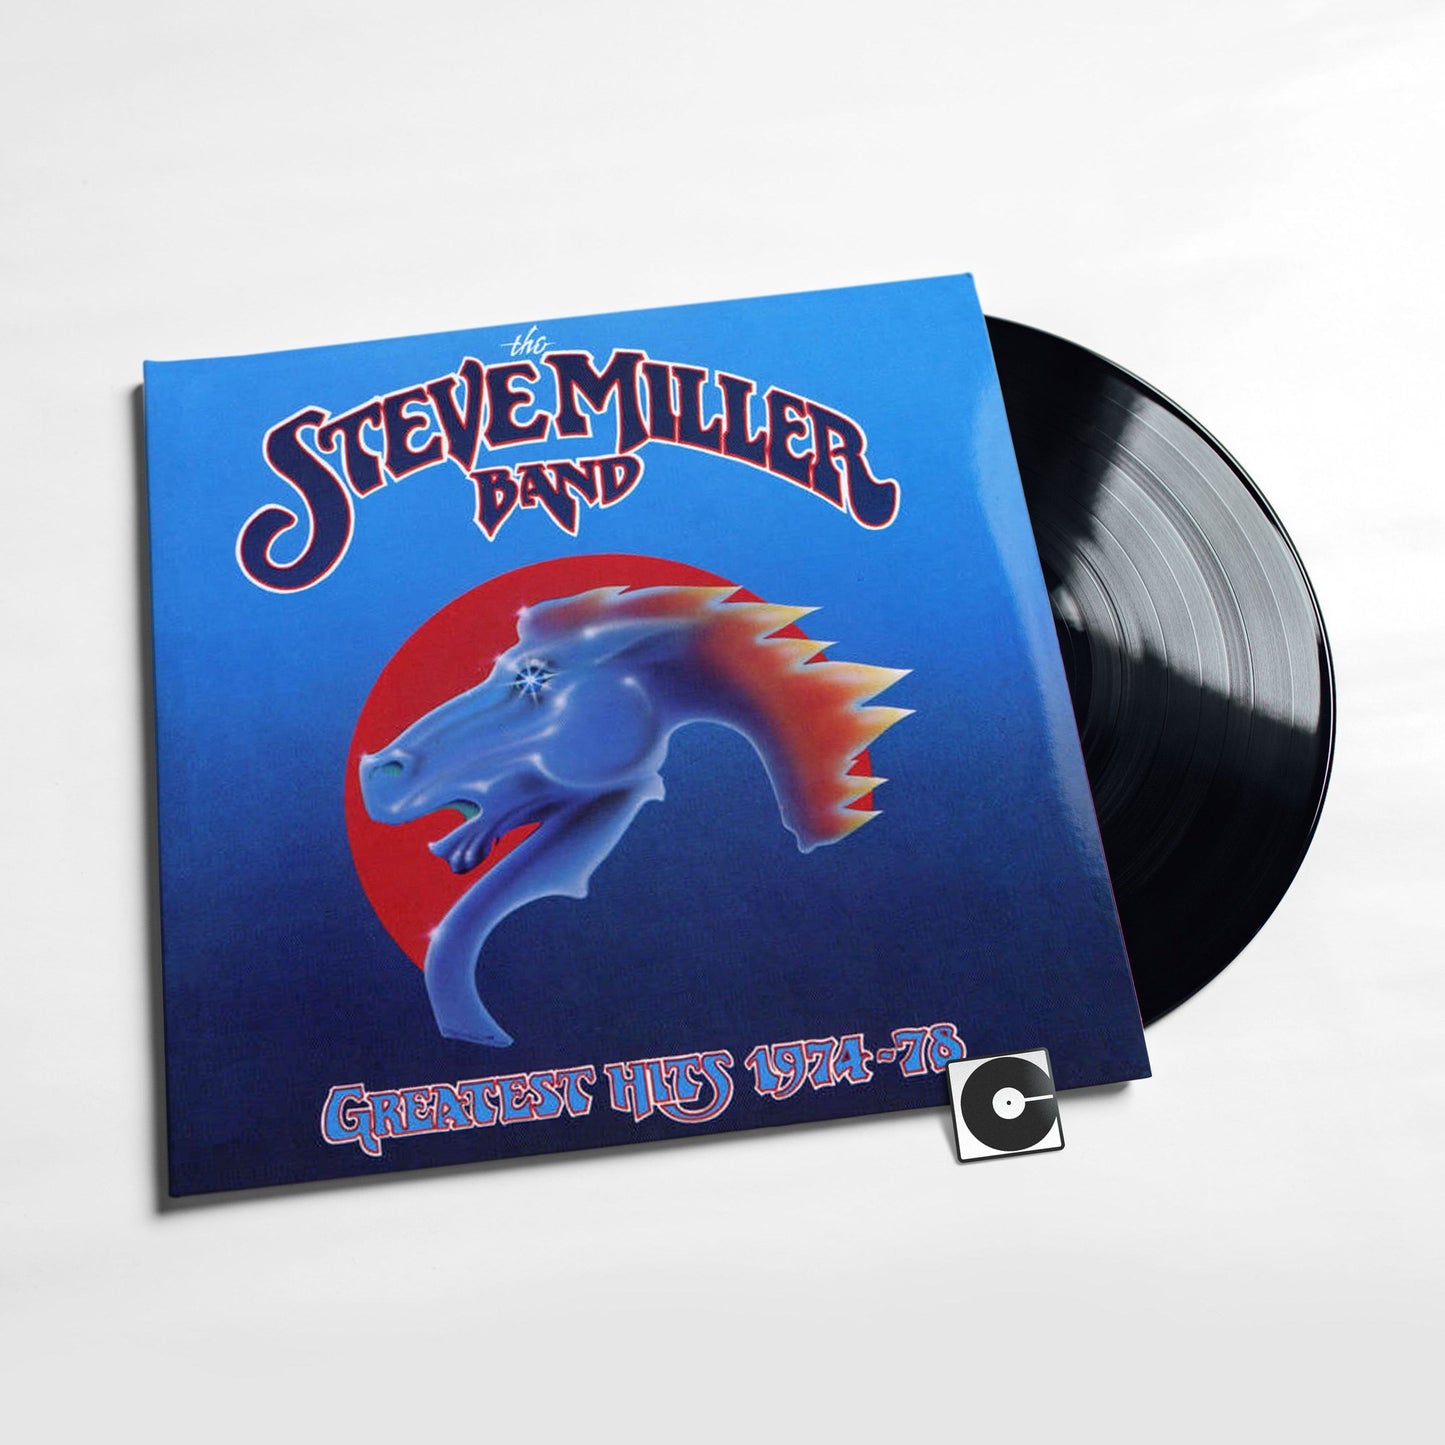 Steve Miller Band - "Greatest Hits 1974-78"